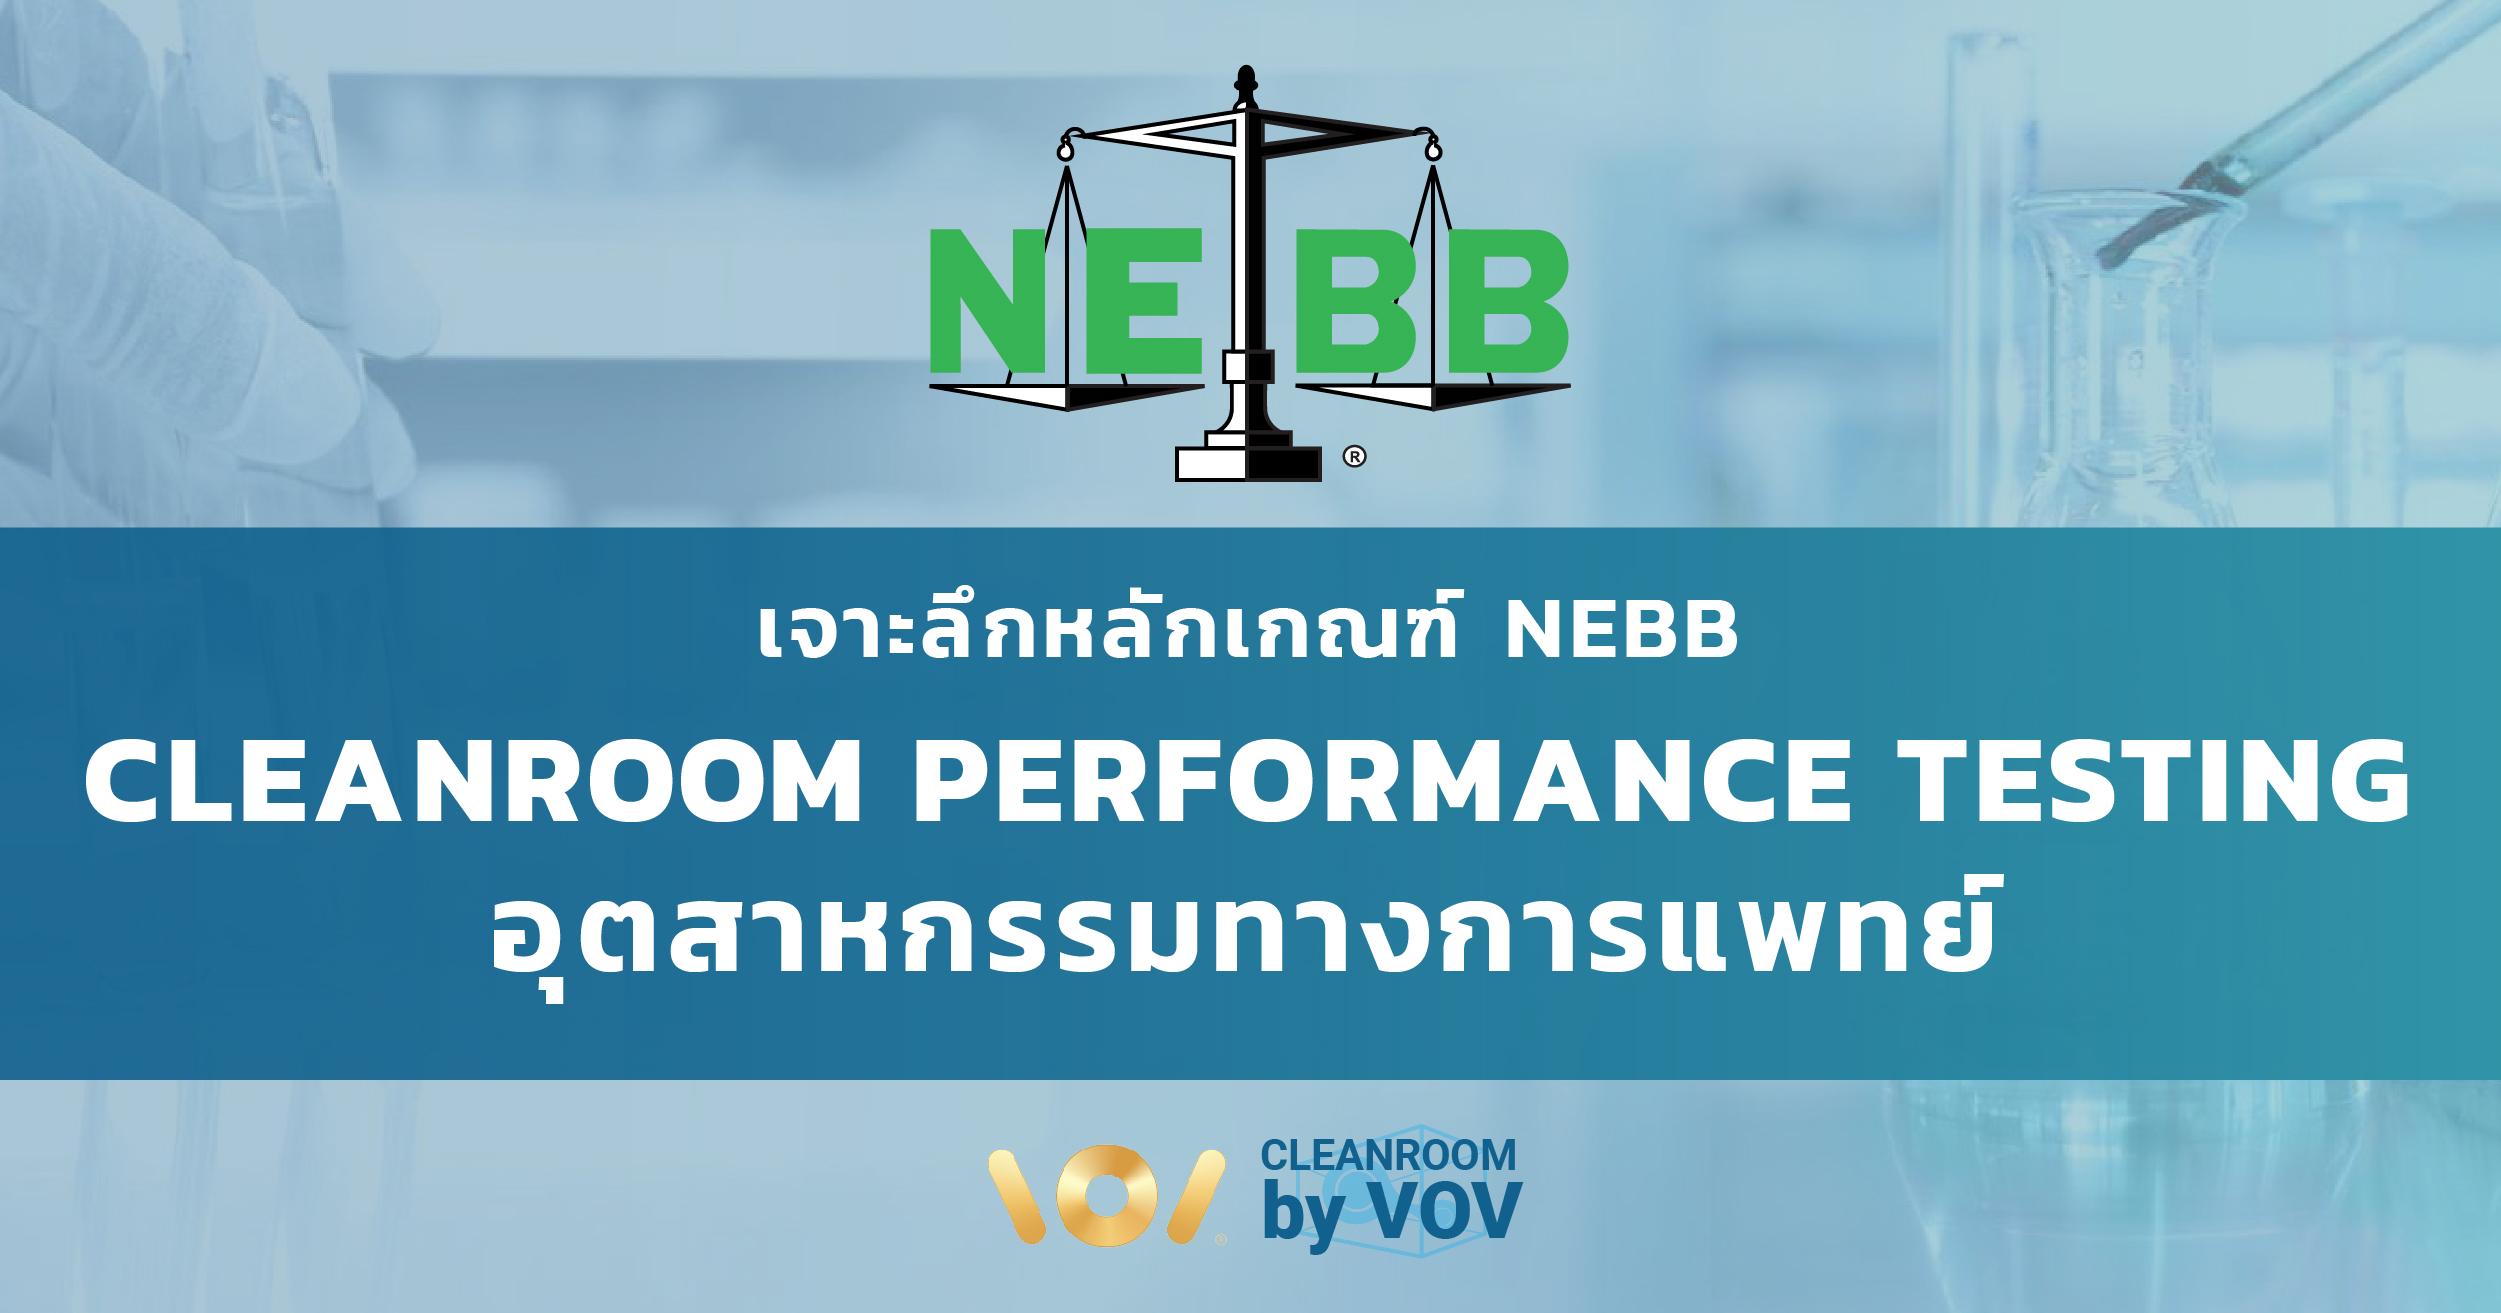 เจาะลึกหลักเกณฑ์ NEBB Cleanroom Performance Testing (CPT) อุตสาหกรรมทางการแพทย์